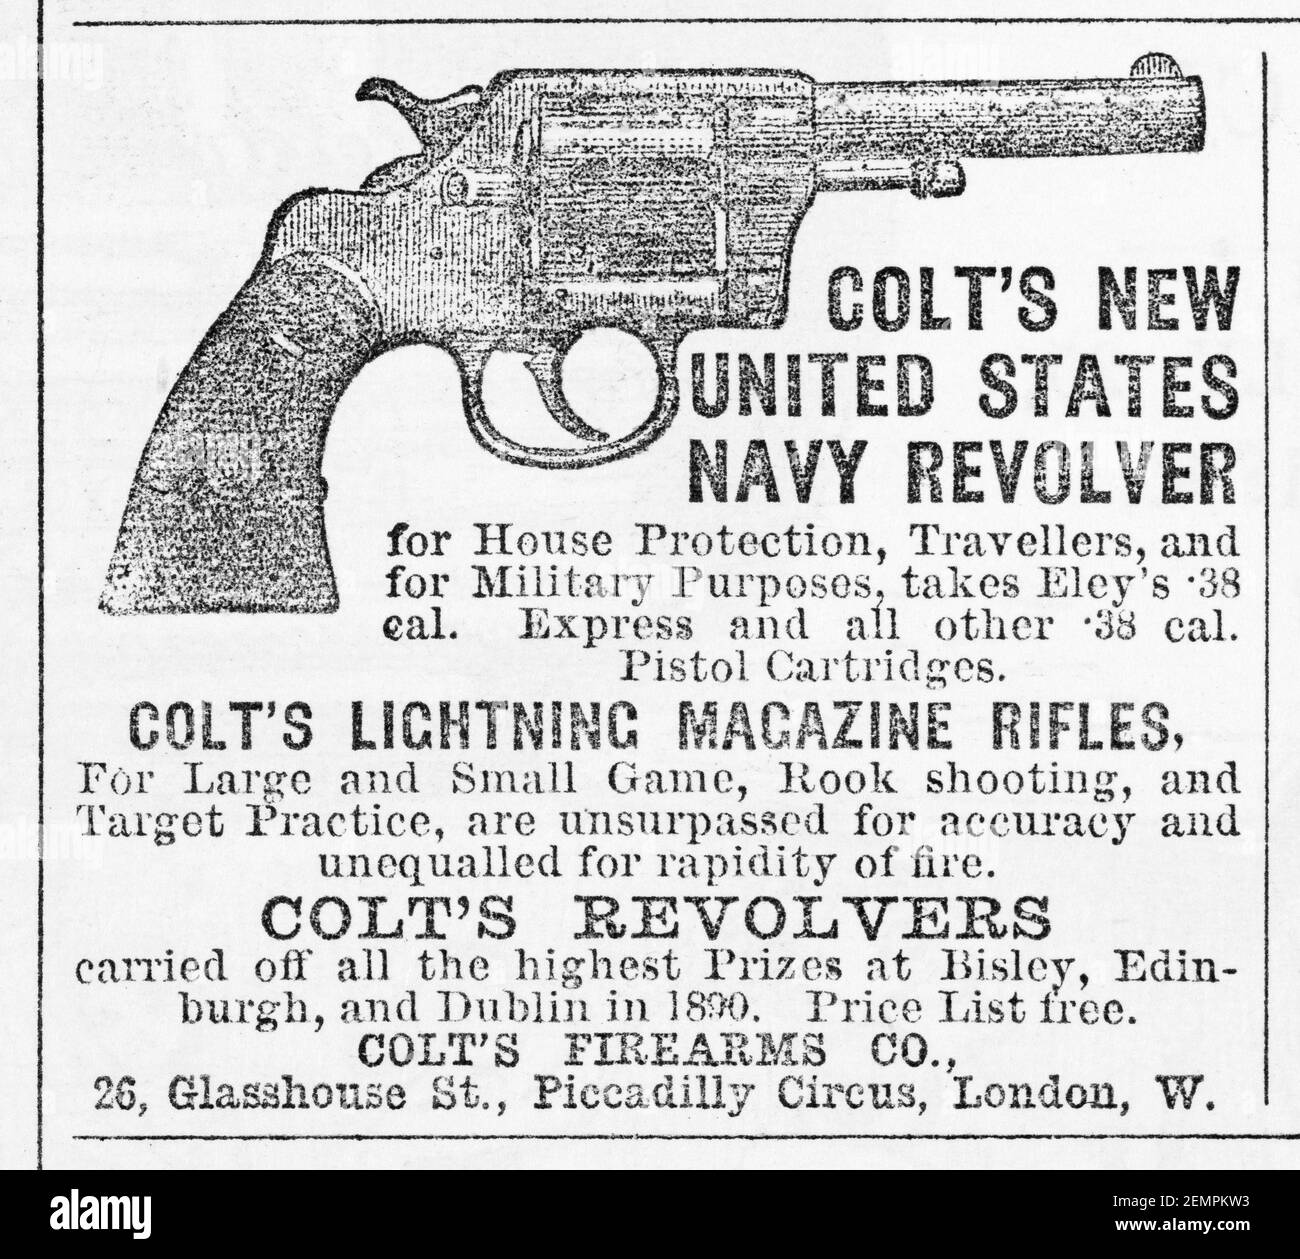 Antiguo anuncio de armas de fuego de Colt en el Reino Unido de 1891 - antes de los albores de los estándares de publicidad y cuando las armas de fuego fácilmente disponibles. Historia de la publicidad, viejos anuncios. Foto de stock